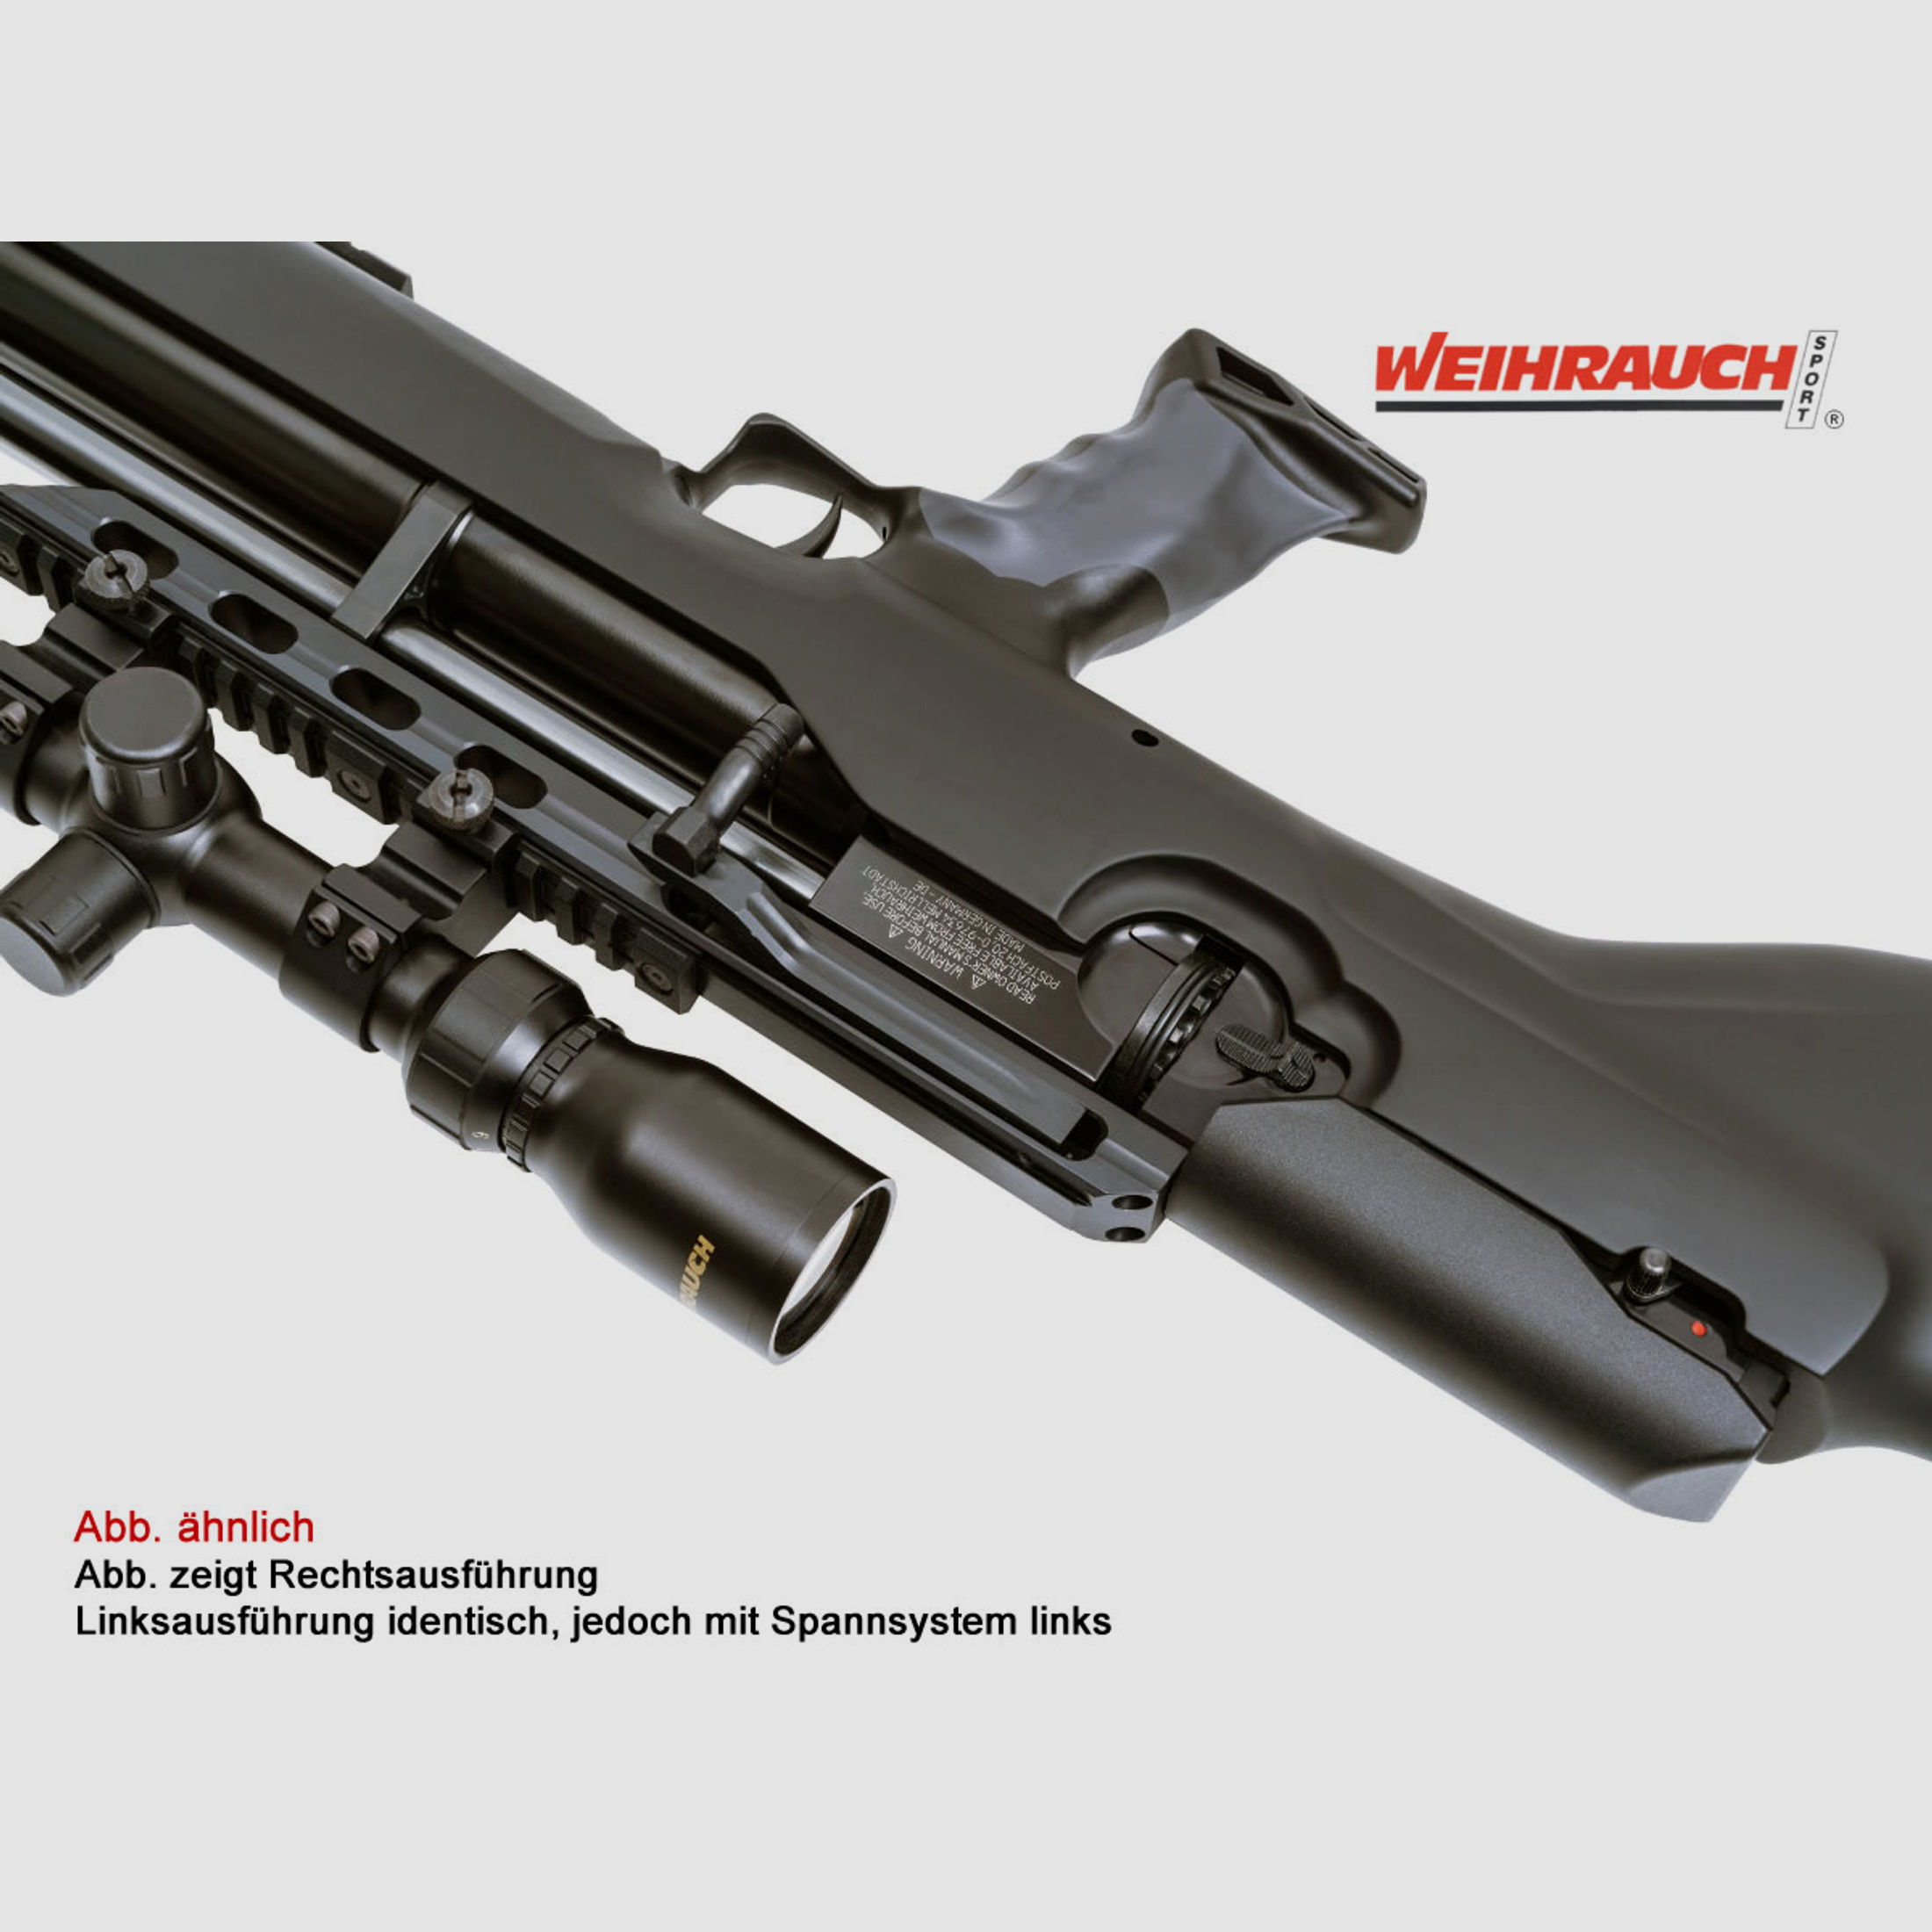 Pressluftgewehr Weihrauch HW 100 Bullpup, Synthetikschaft, Kompensator, Linksspanner, Kal. 4,5 mm (P18)